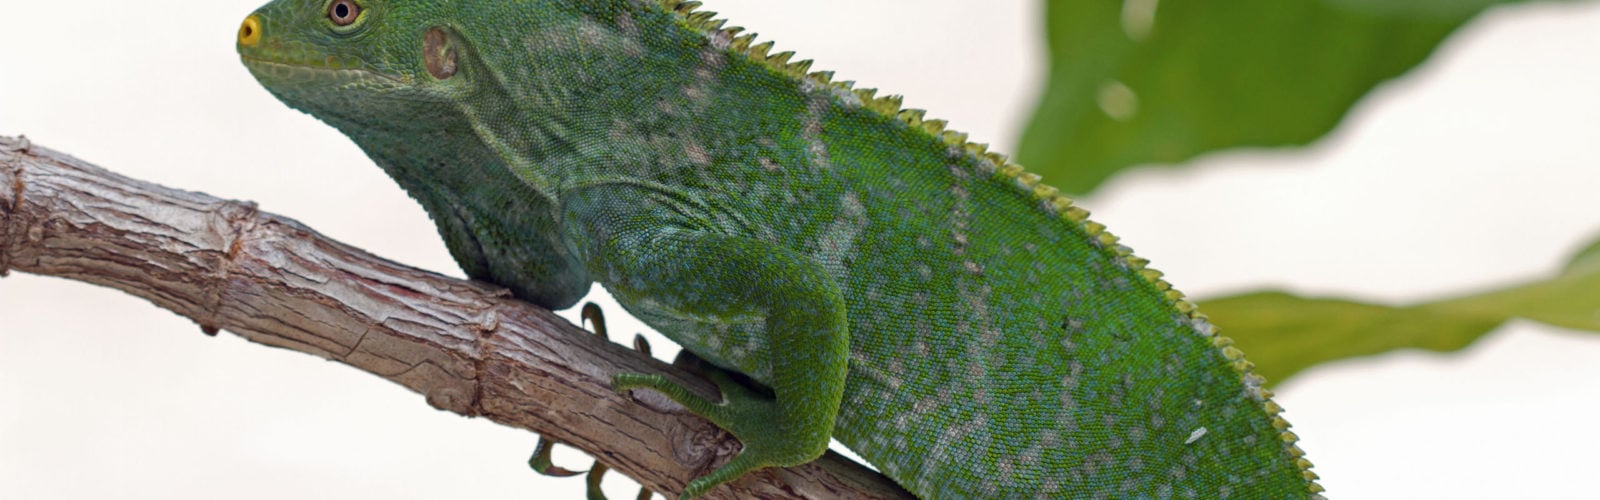 Fijian Iguana